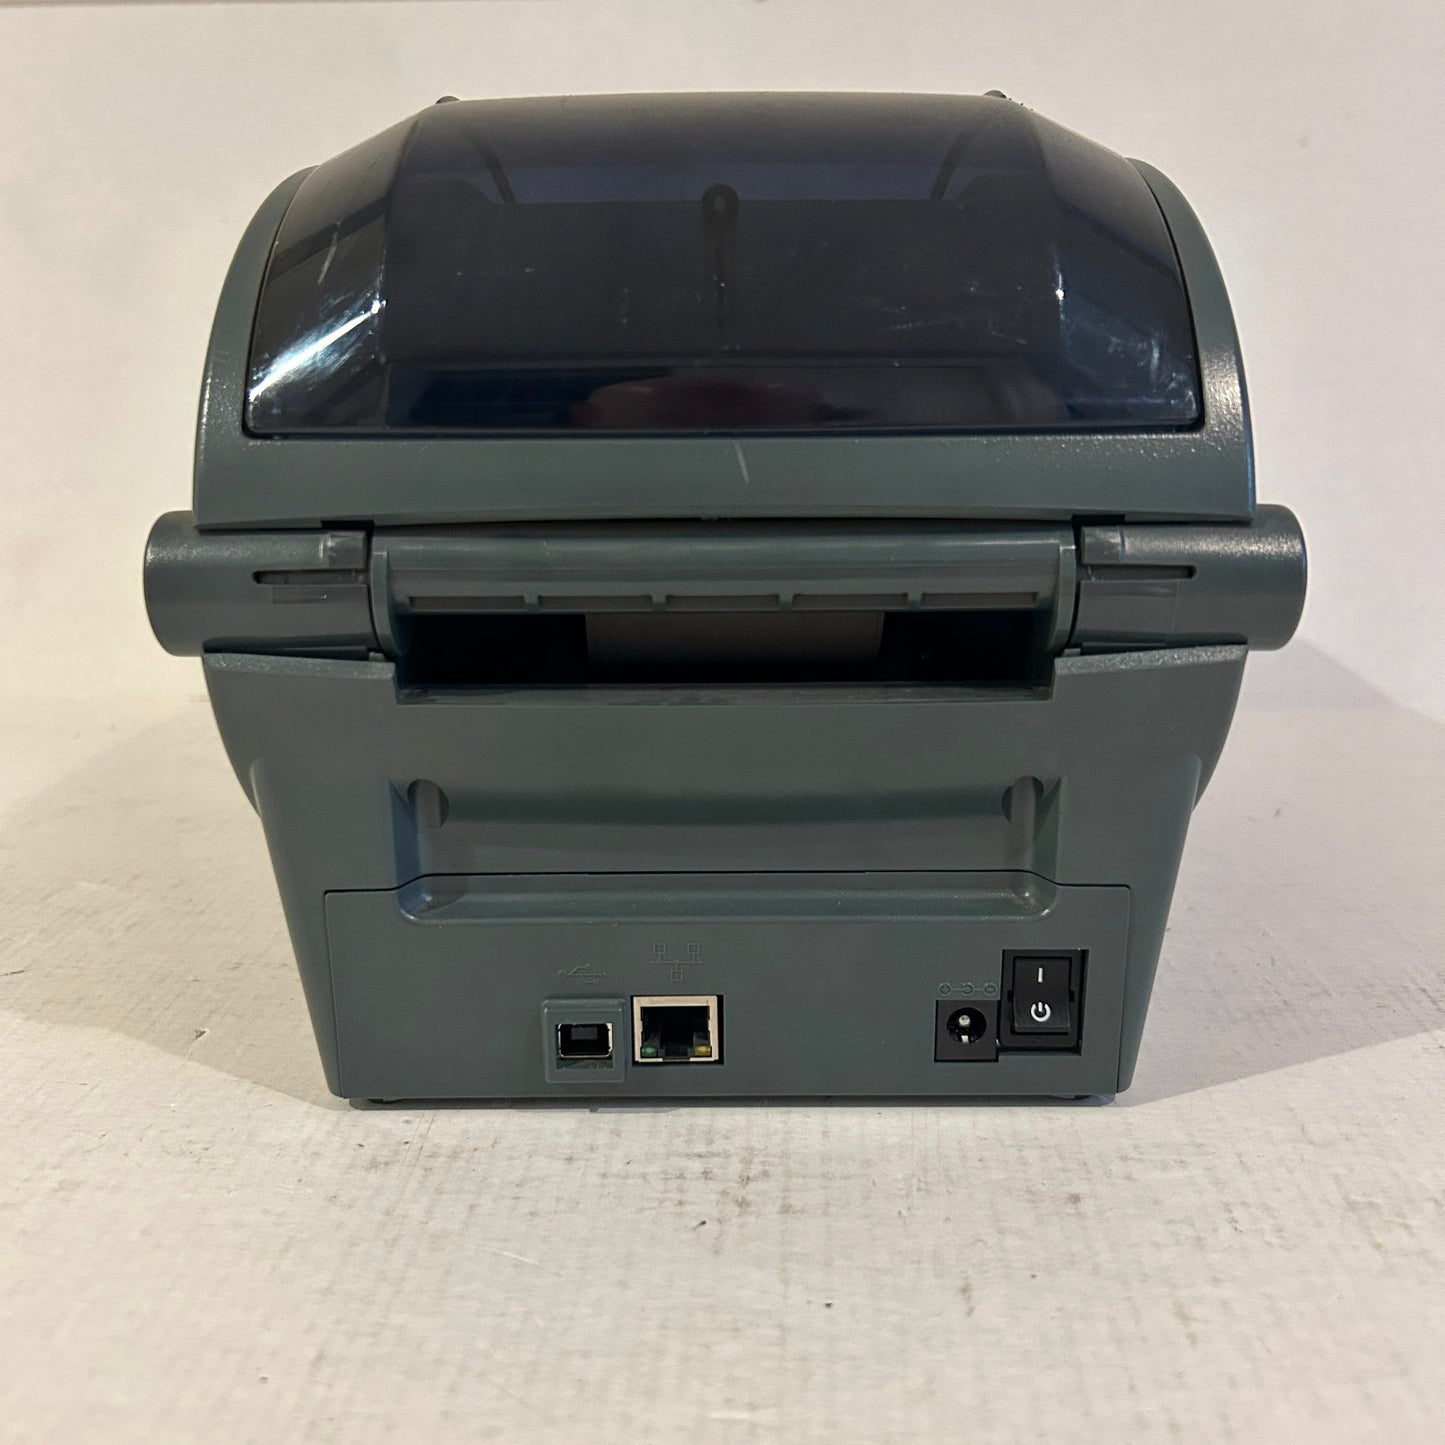 Zebra 4" Thermal Transfer Desktop Label Printer - GK420t